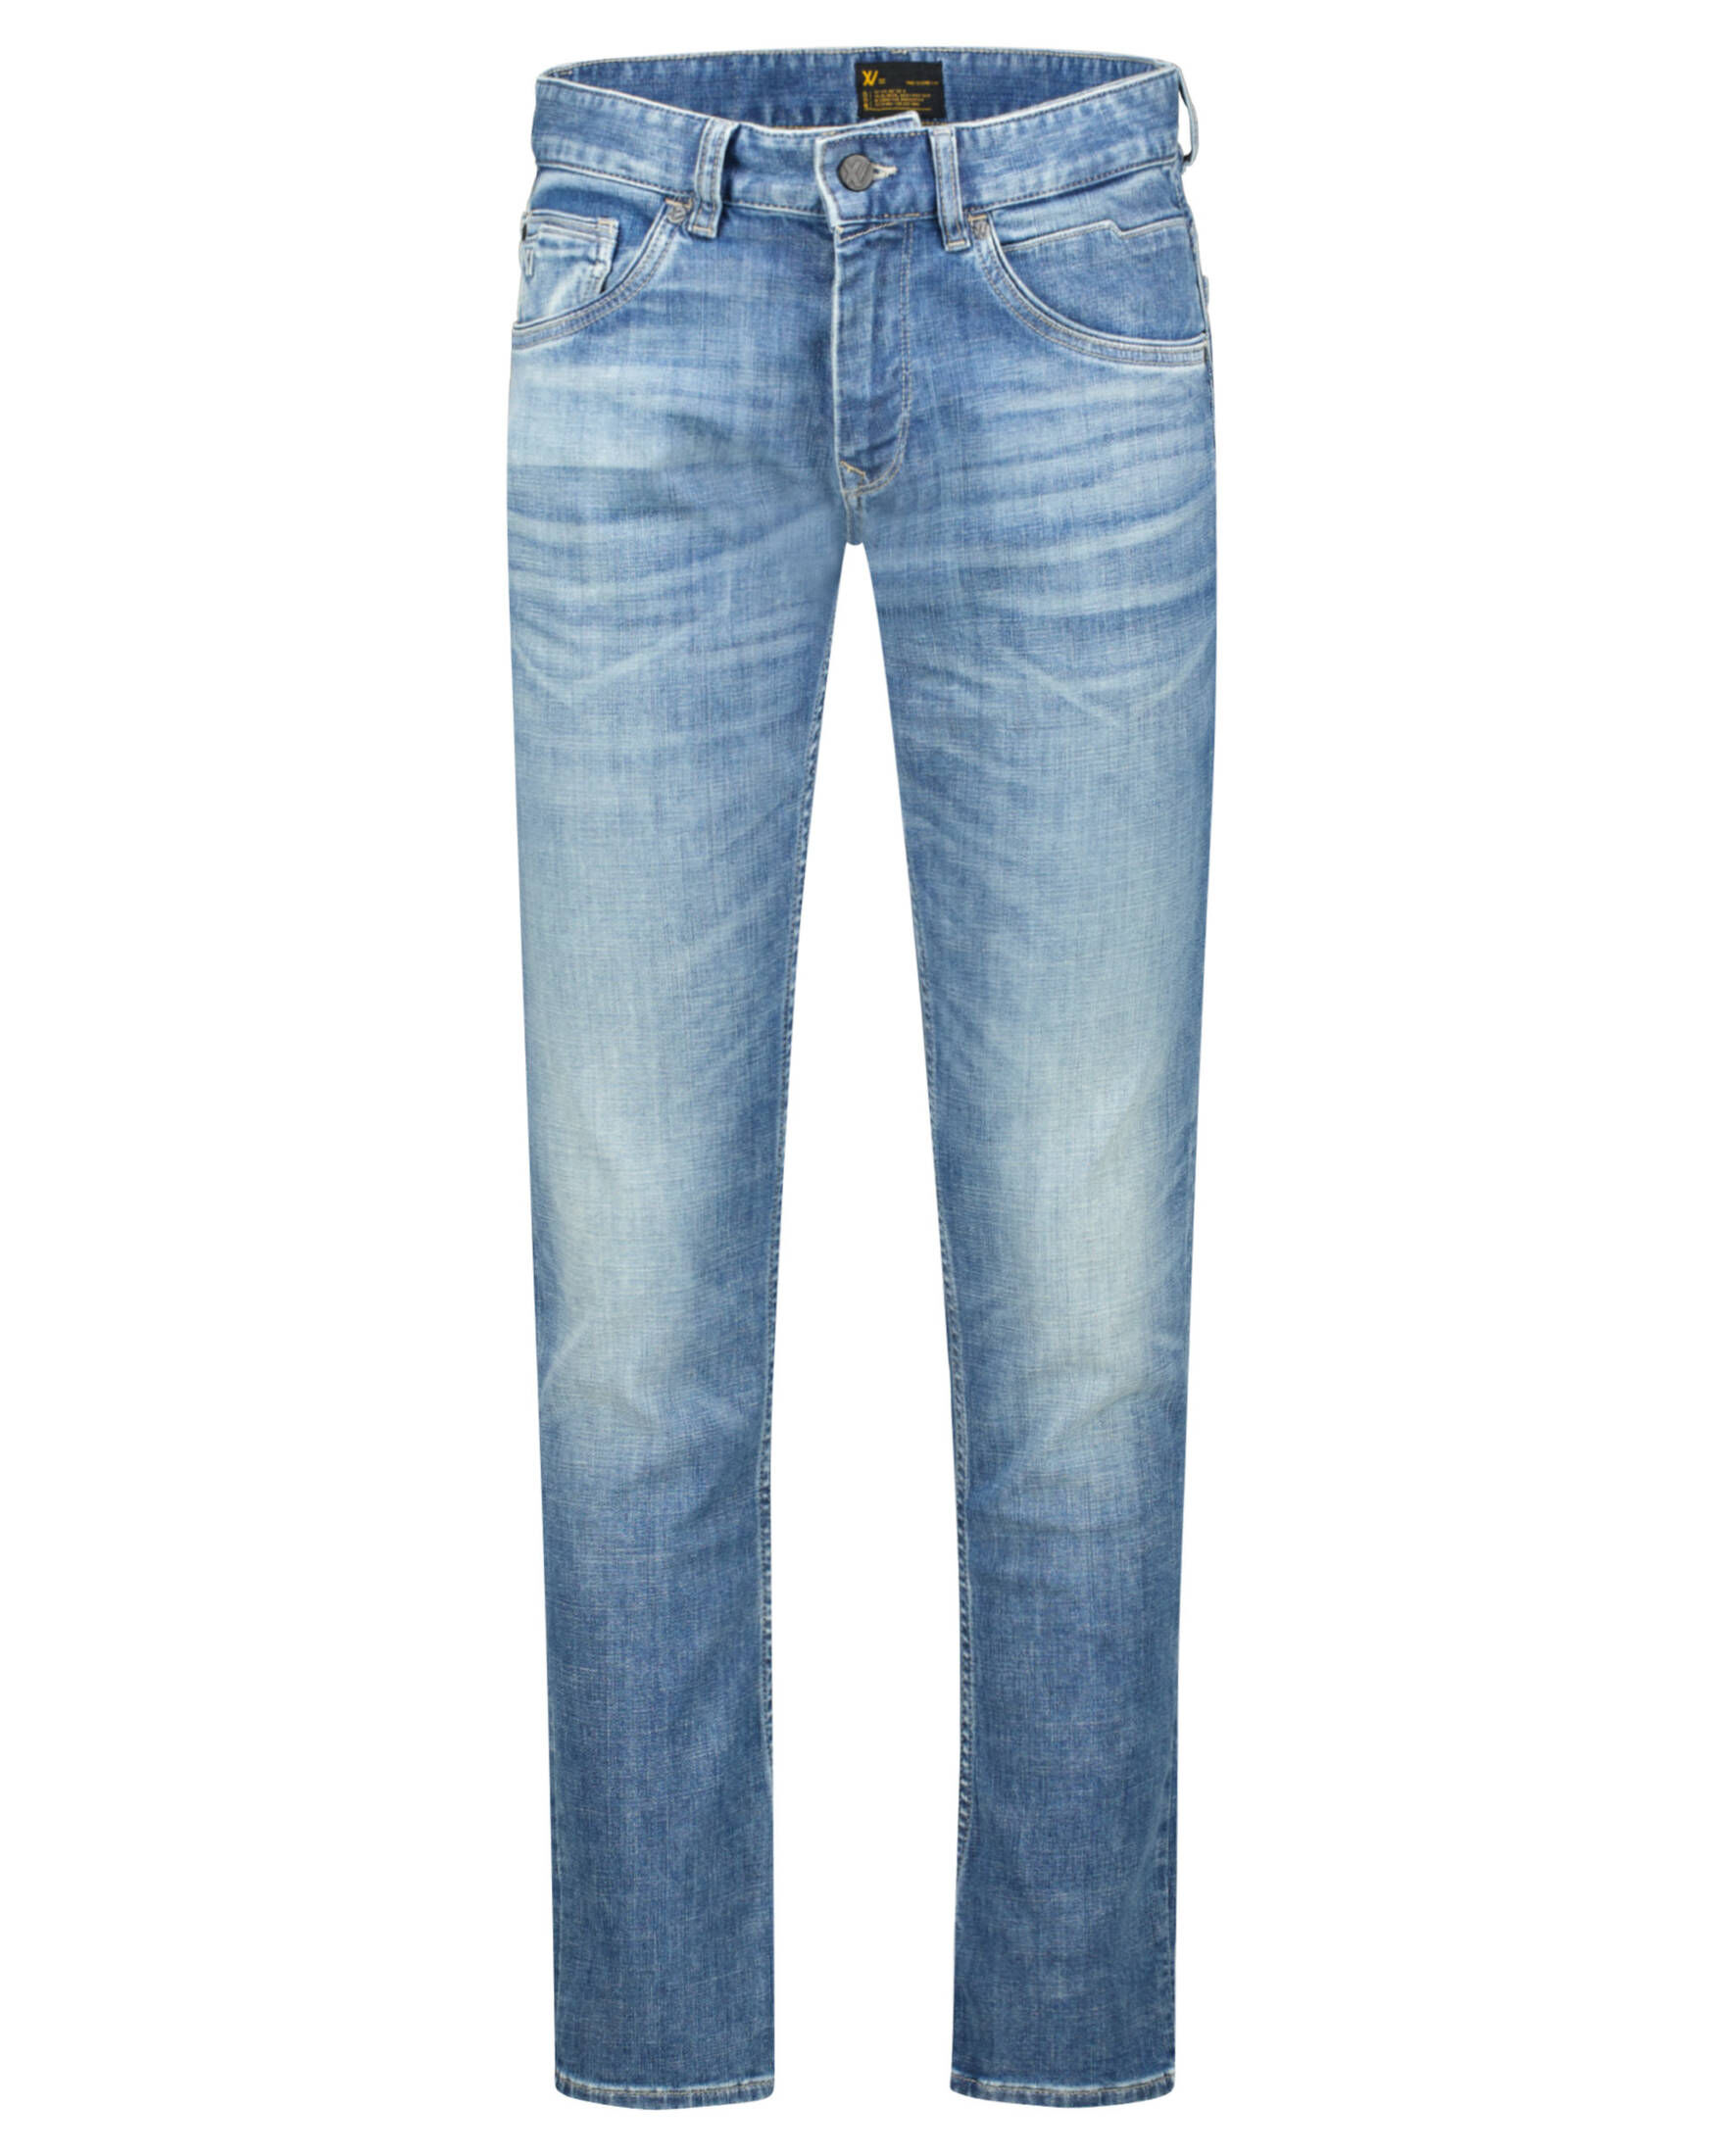 PME Legend Herren Jeans XV DENIM AIR BRIGHT BLUE Slim Fit kaufen | engelhorn